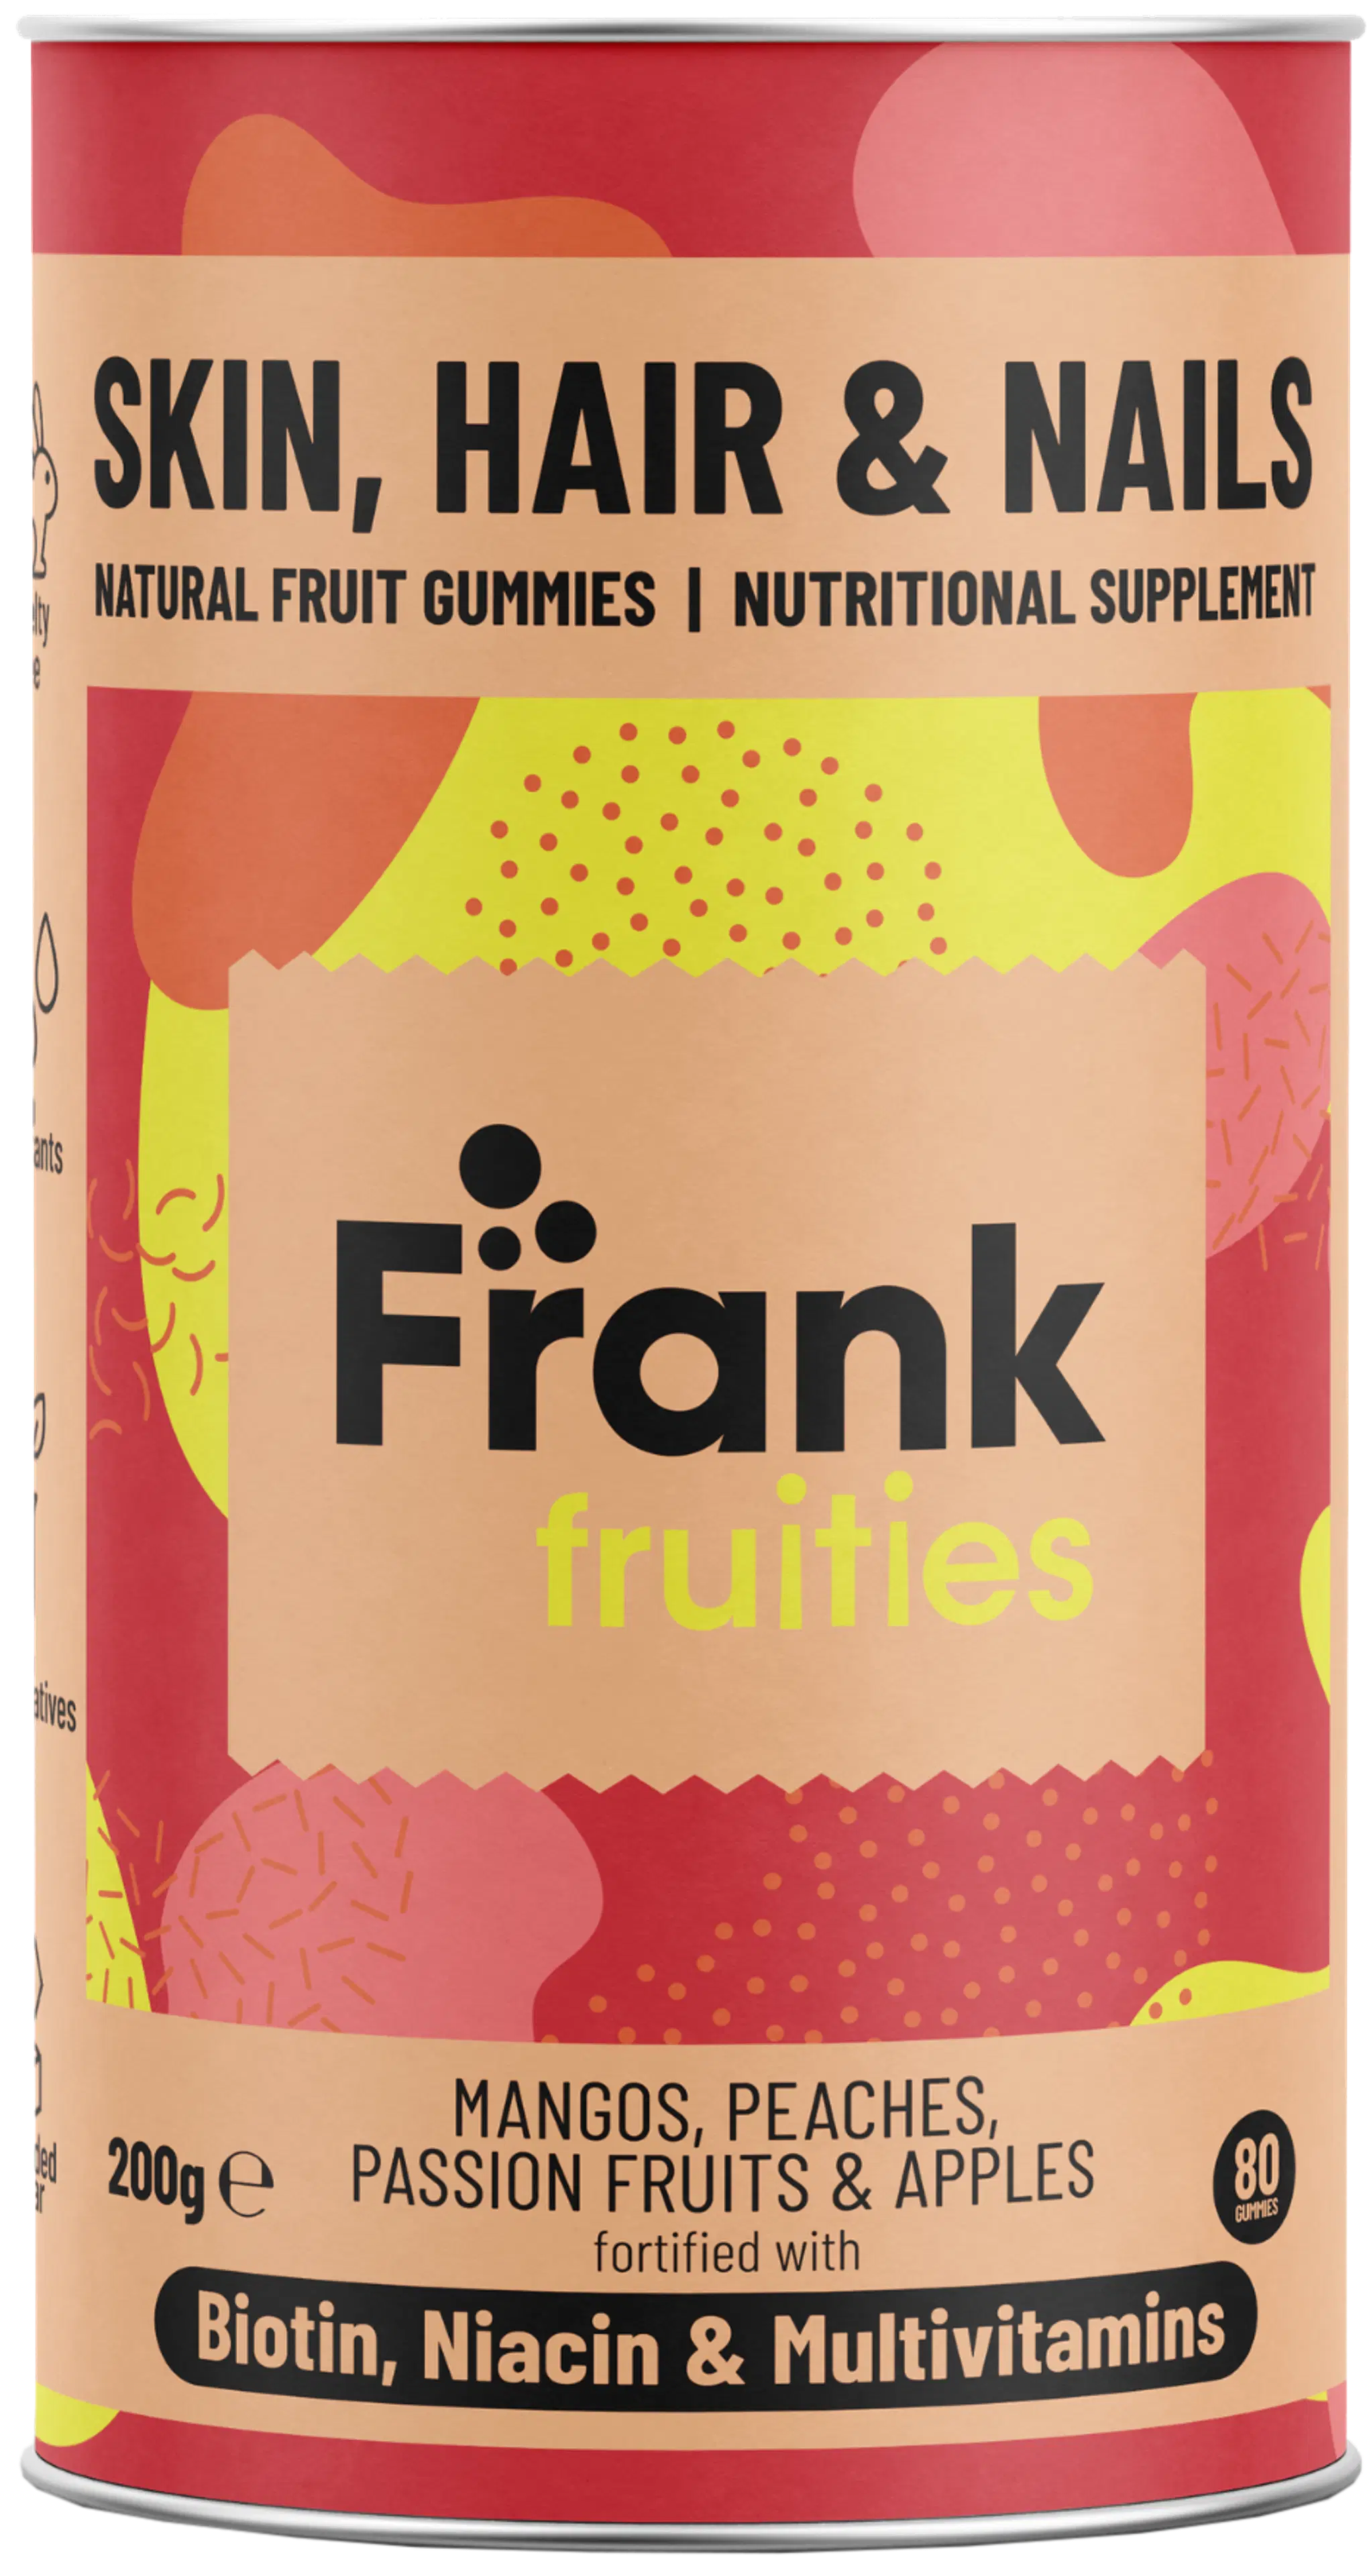 Frank fruities Skin, Hair & Nails monivitamiini-kivennäisvalmiste 80 kpl